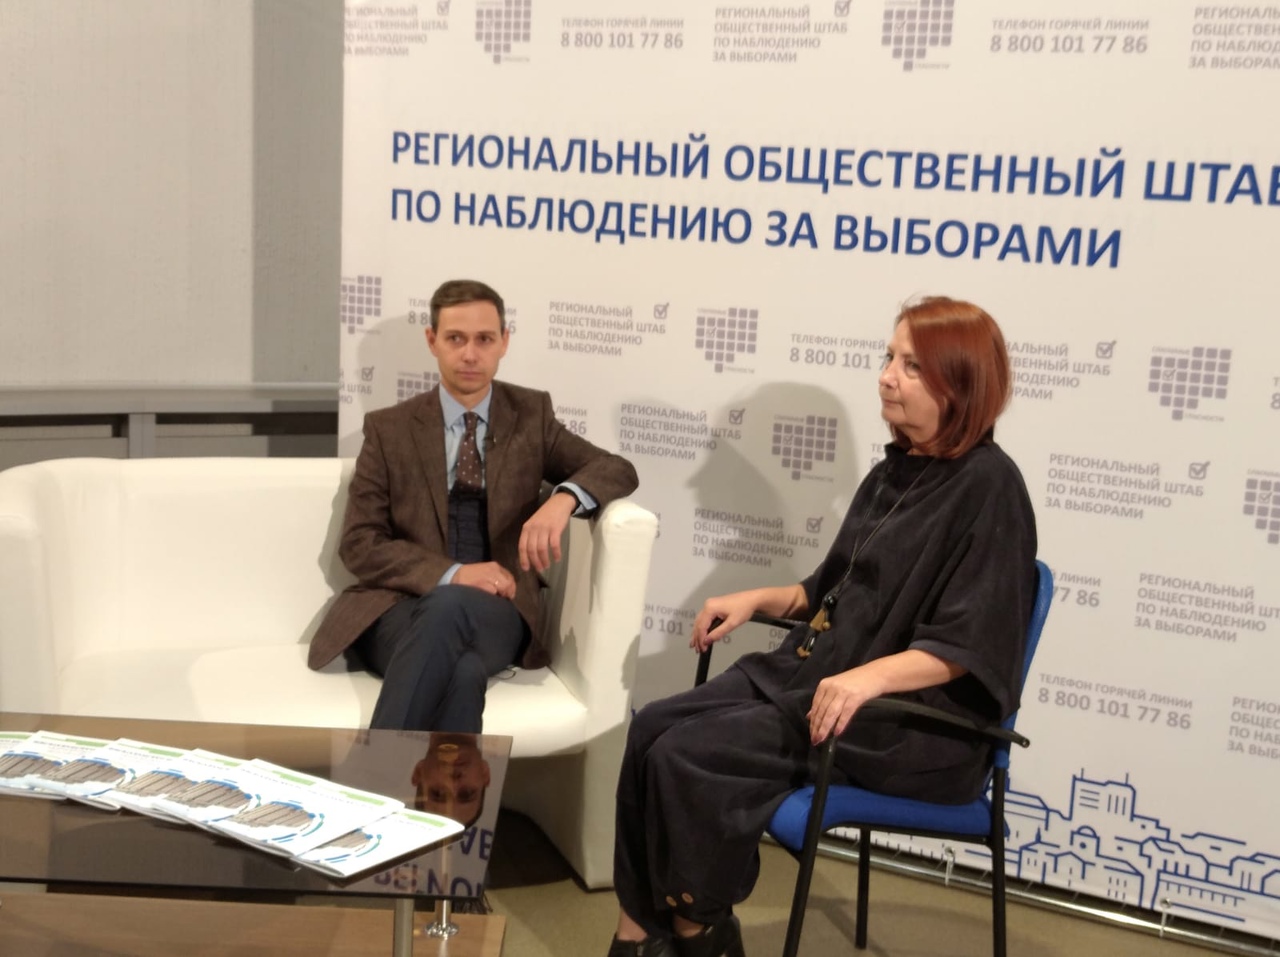 Максим Щегленко: «Важно выразить свою гражданскую позицию» 